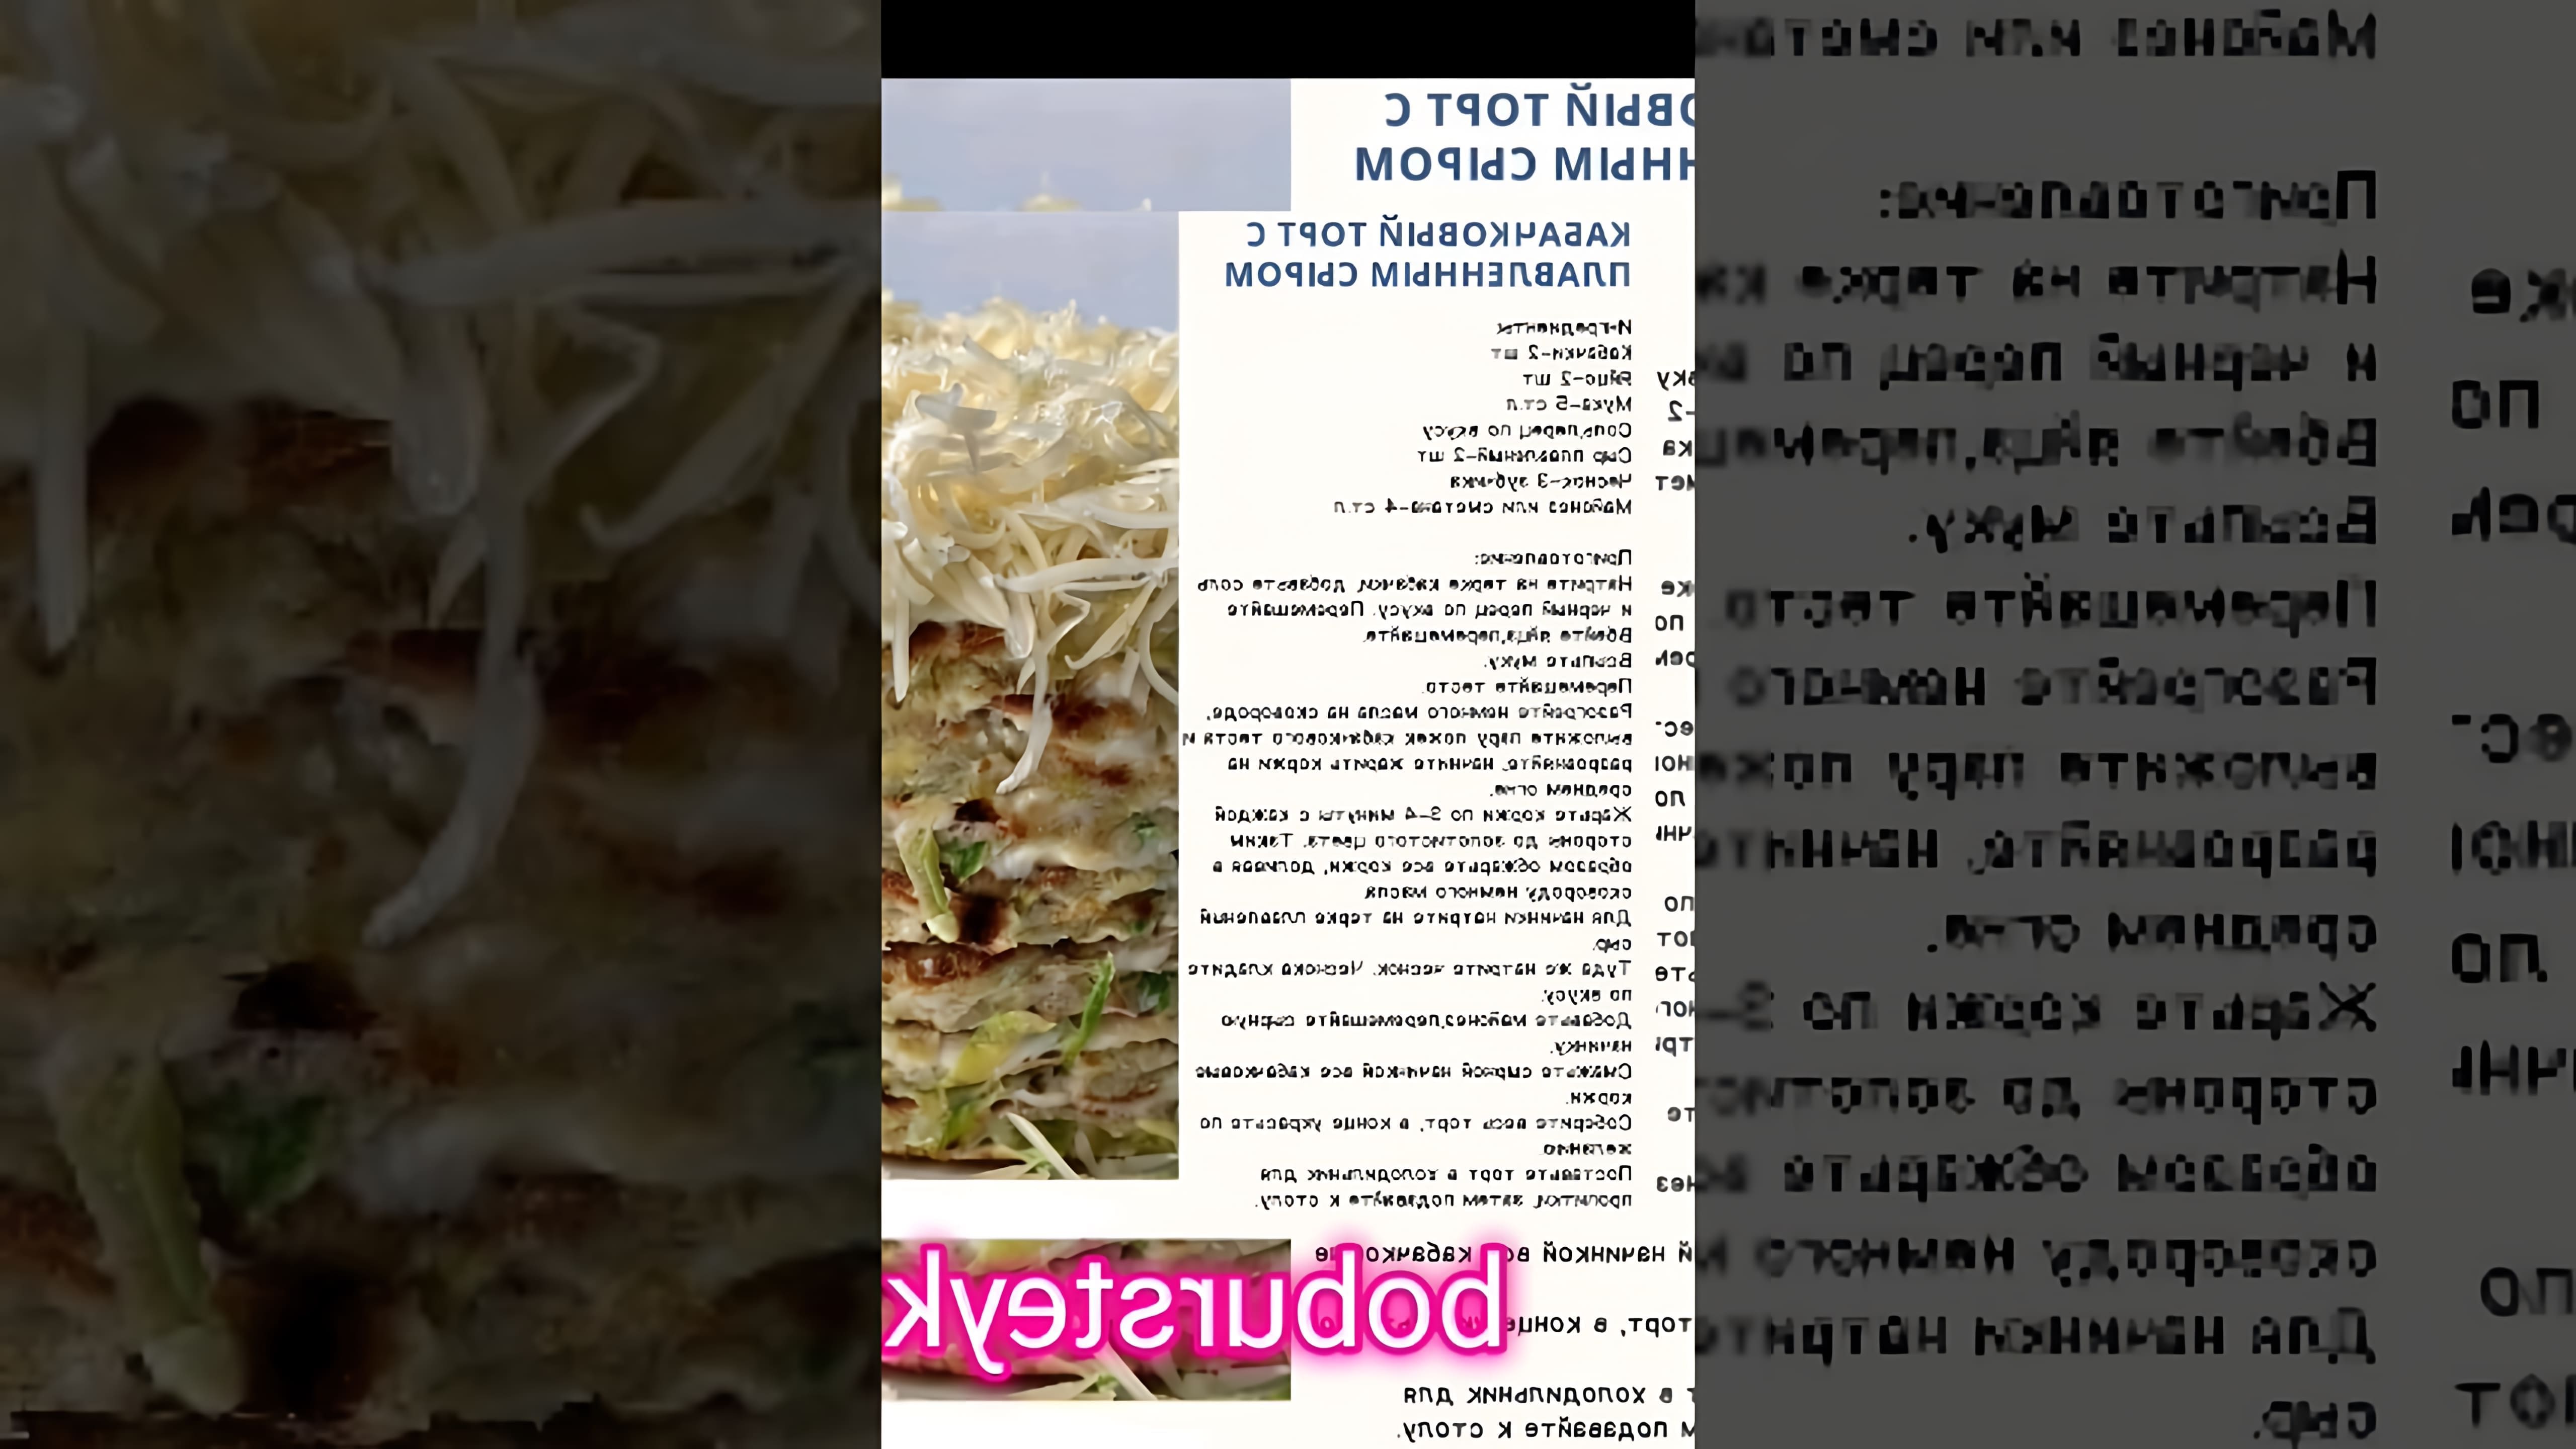 "Кабачковый торт с плавленым сыром от Bobursteak" - это видео-ролик, который демонстрирует процесс приготовления вкусного и полезного блюда